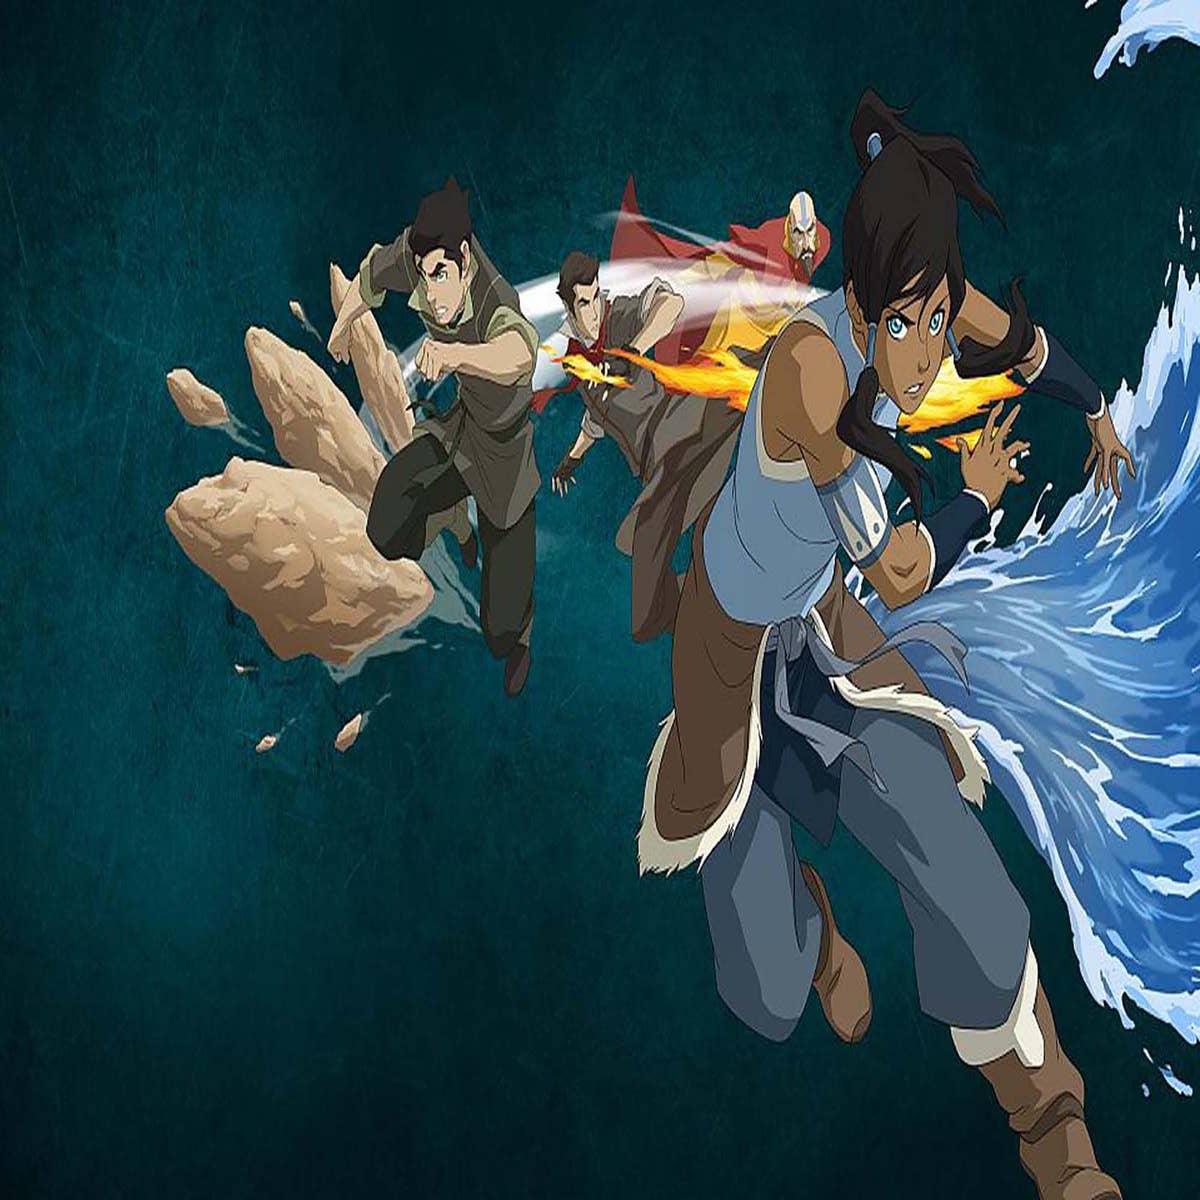 Hãy cùng Popverse xem lại những chuyến phiêu lưu tuyệt vời với Avatar và huyền thoại Korra trong phiên bản hoạt hình chất lượng cao. Cùng đắm chìm trong thế giới đầy phép thuật và những trận chiến nghẹt thở của các nhân vật!